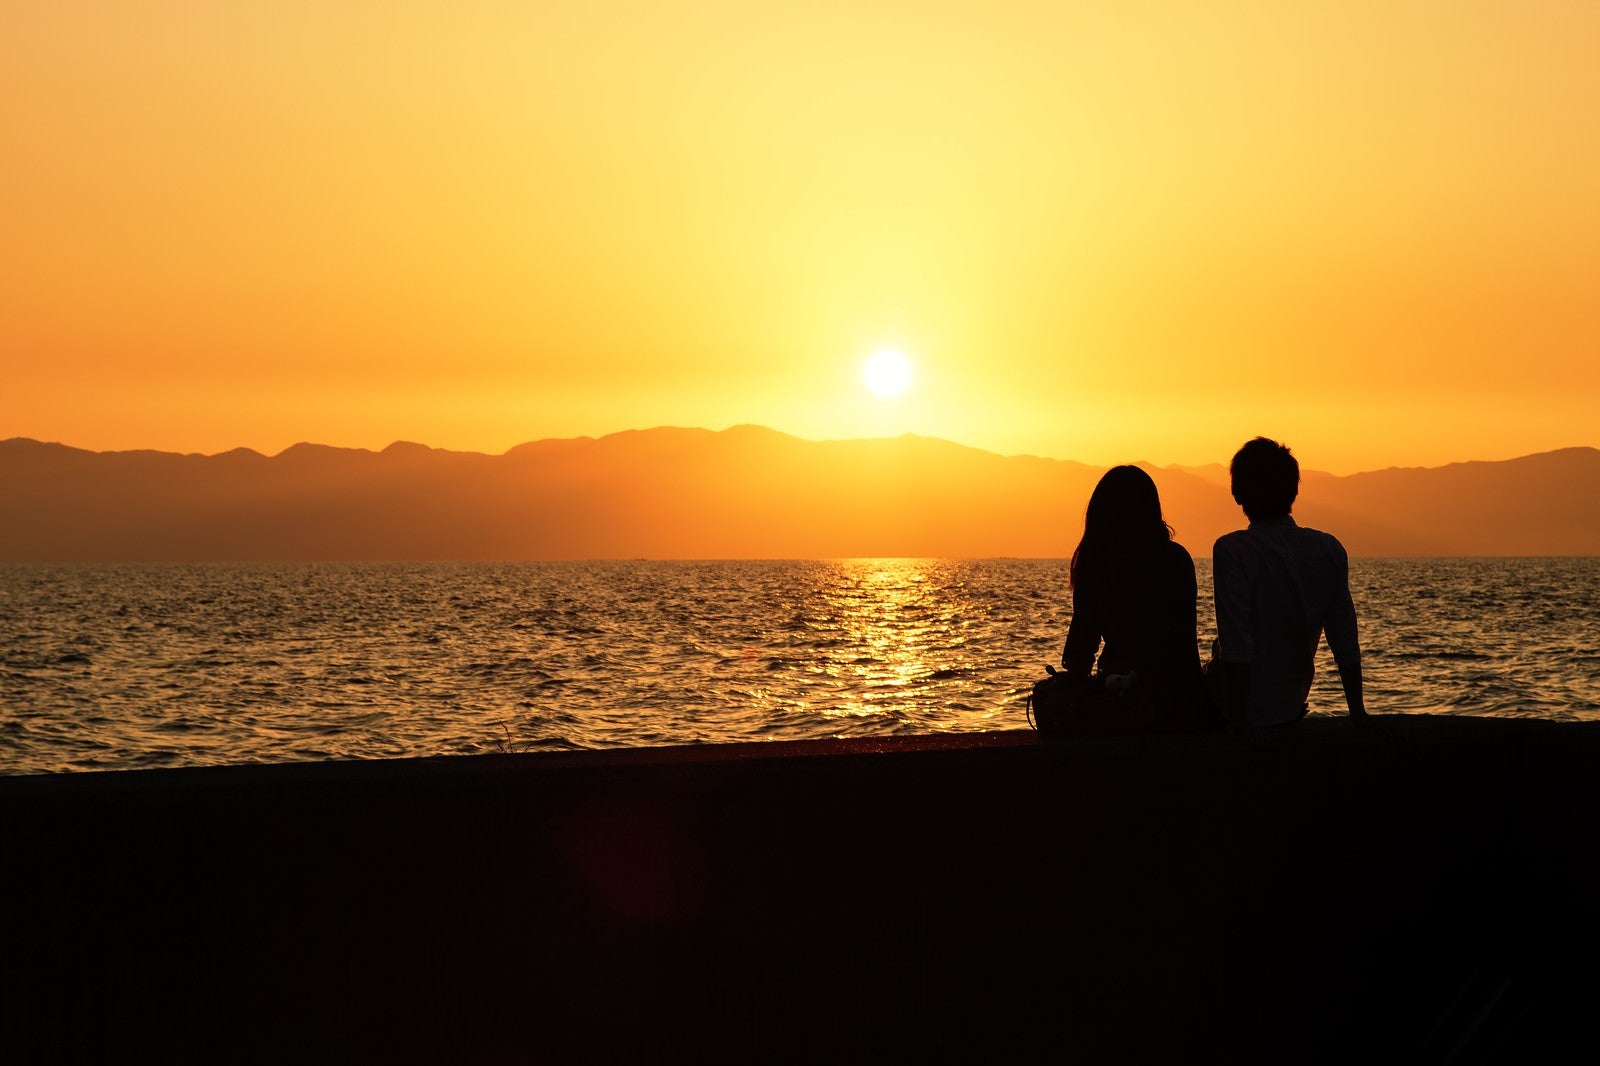 「海沿いの夕焼けとカップルのシルエット」の写真